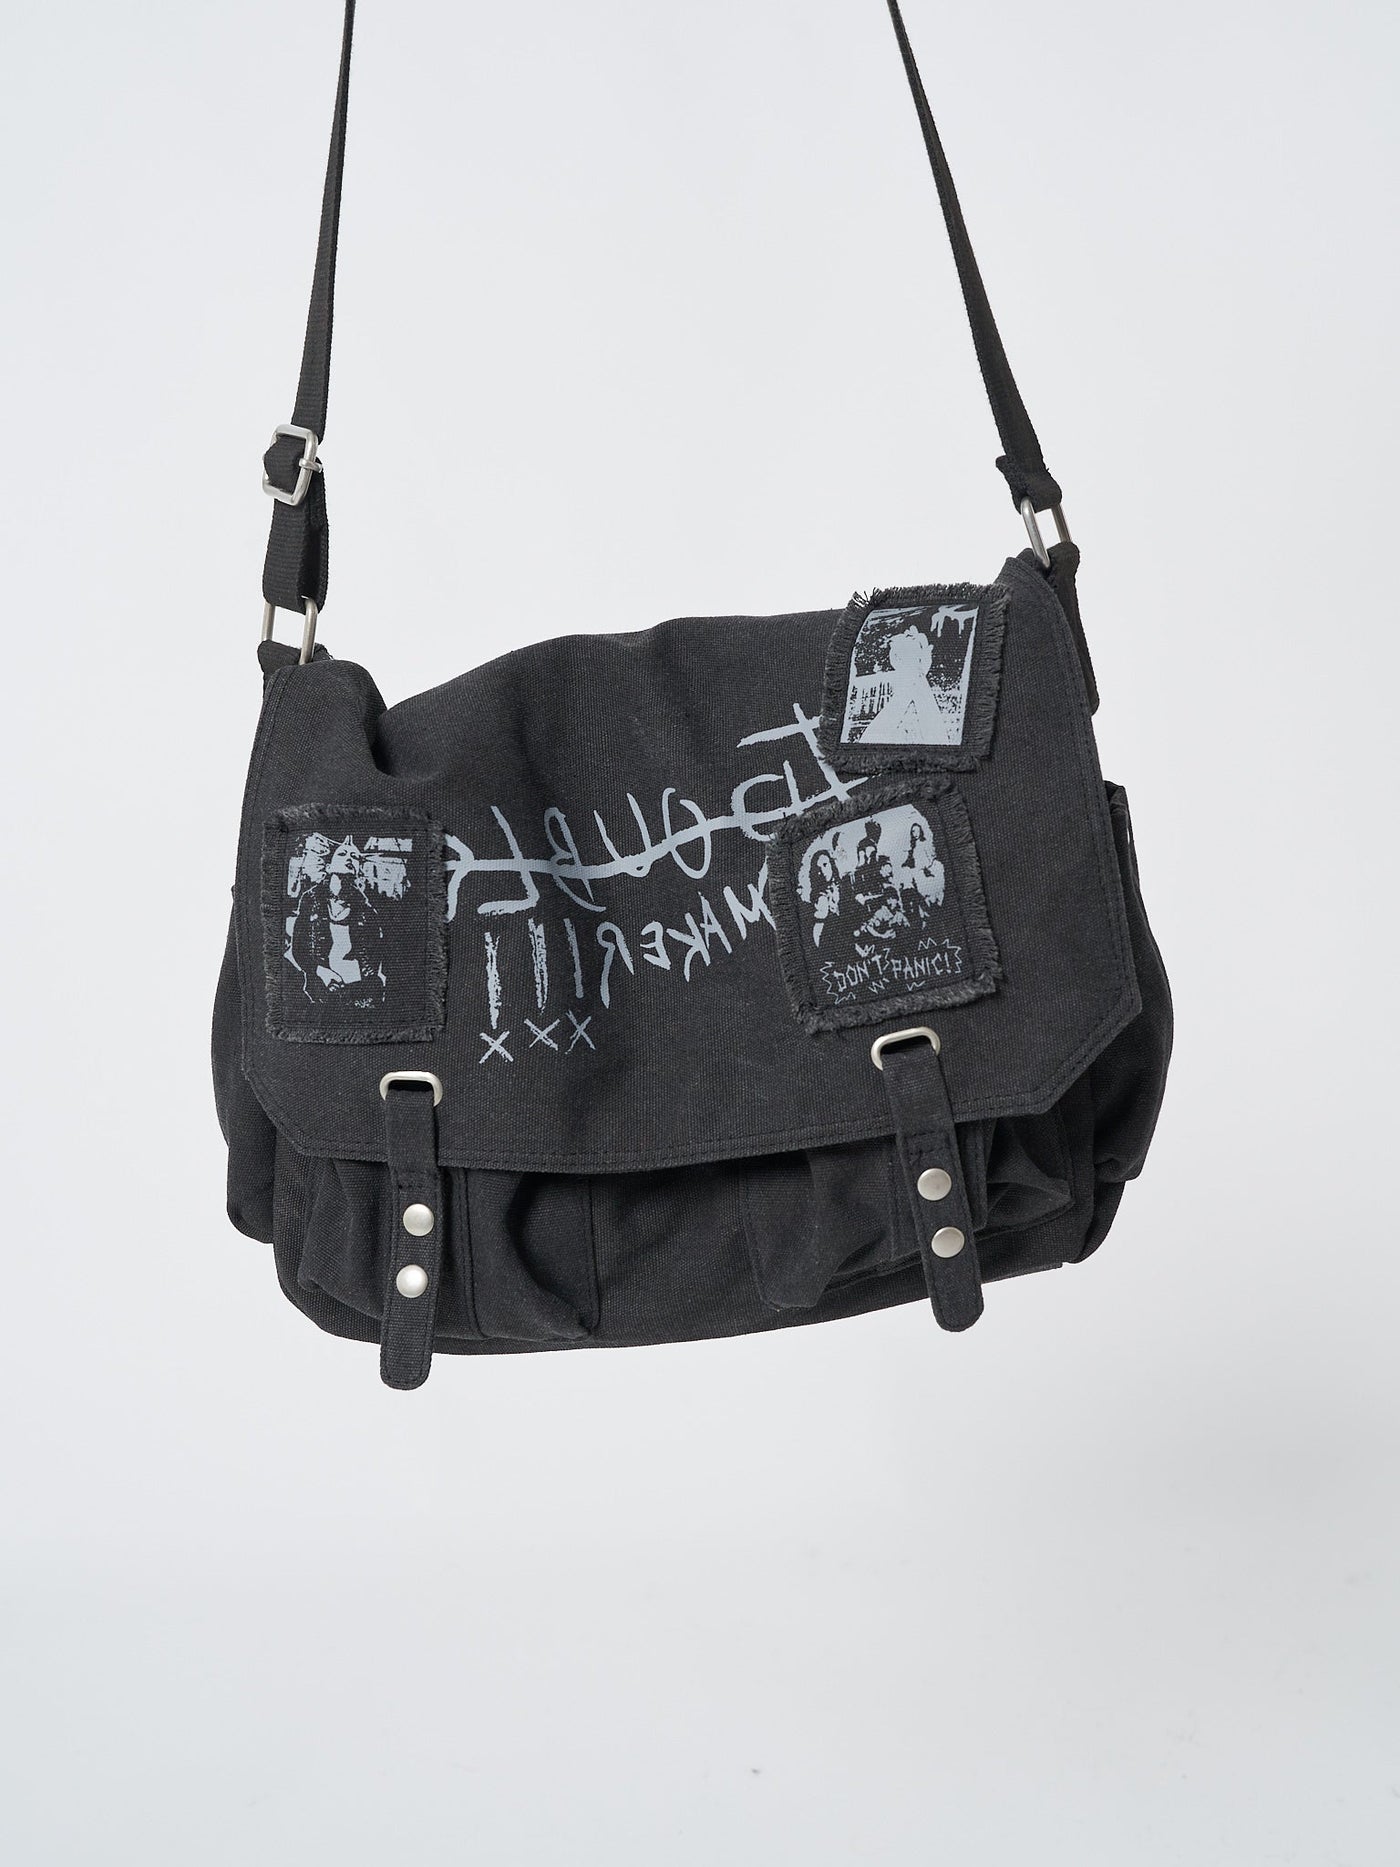 Troublemaker Black Canvas Messenger Bag